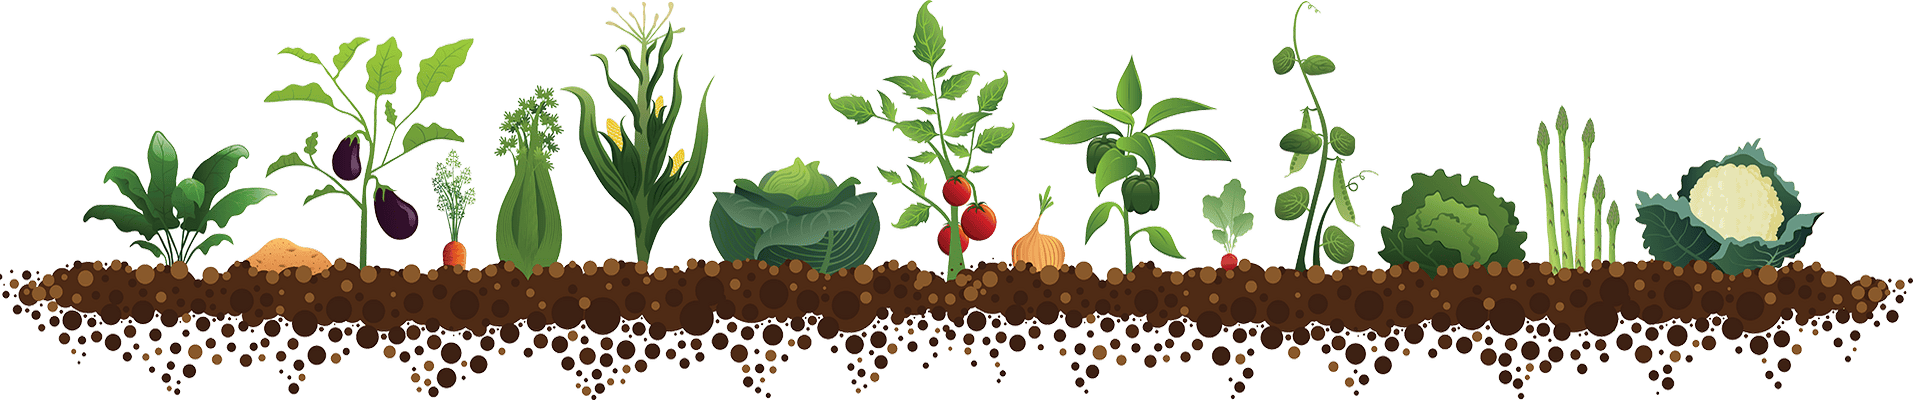 Посів насіння взимку 2020 томати, капуста, перець, огірки, цибуля, баклажан, часник, кабачки, редис, гарбуза